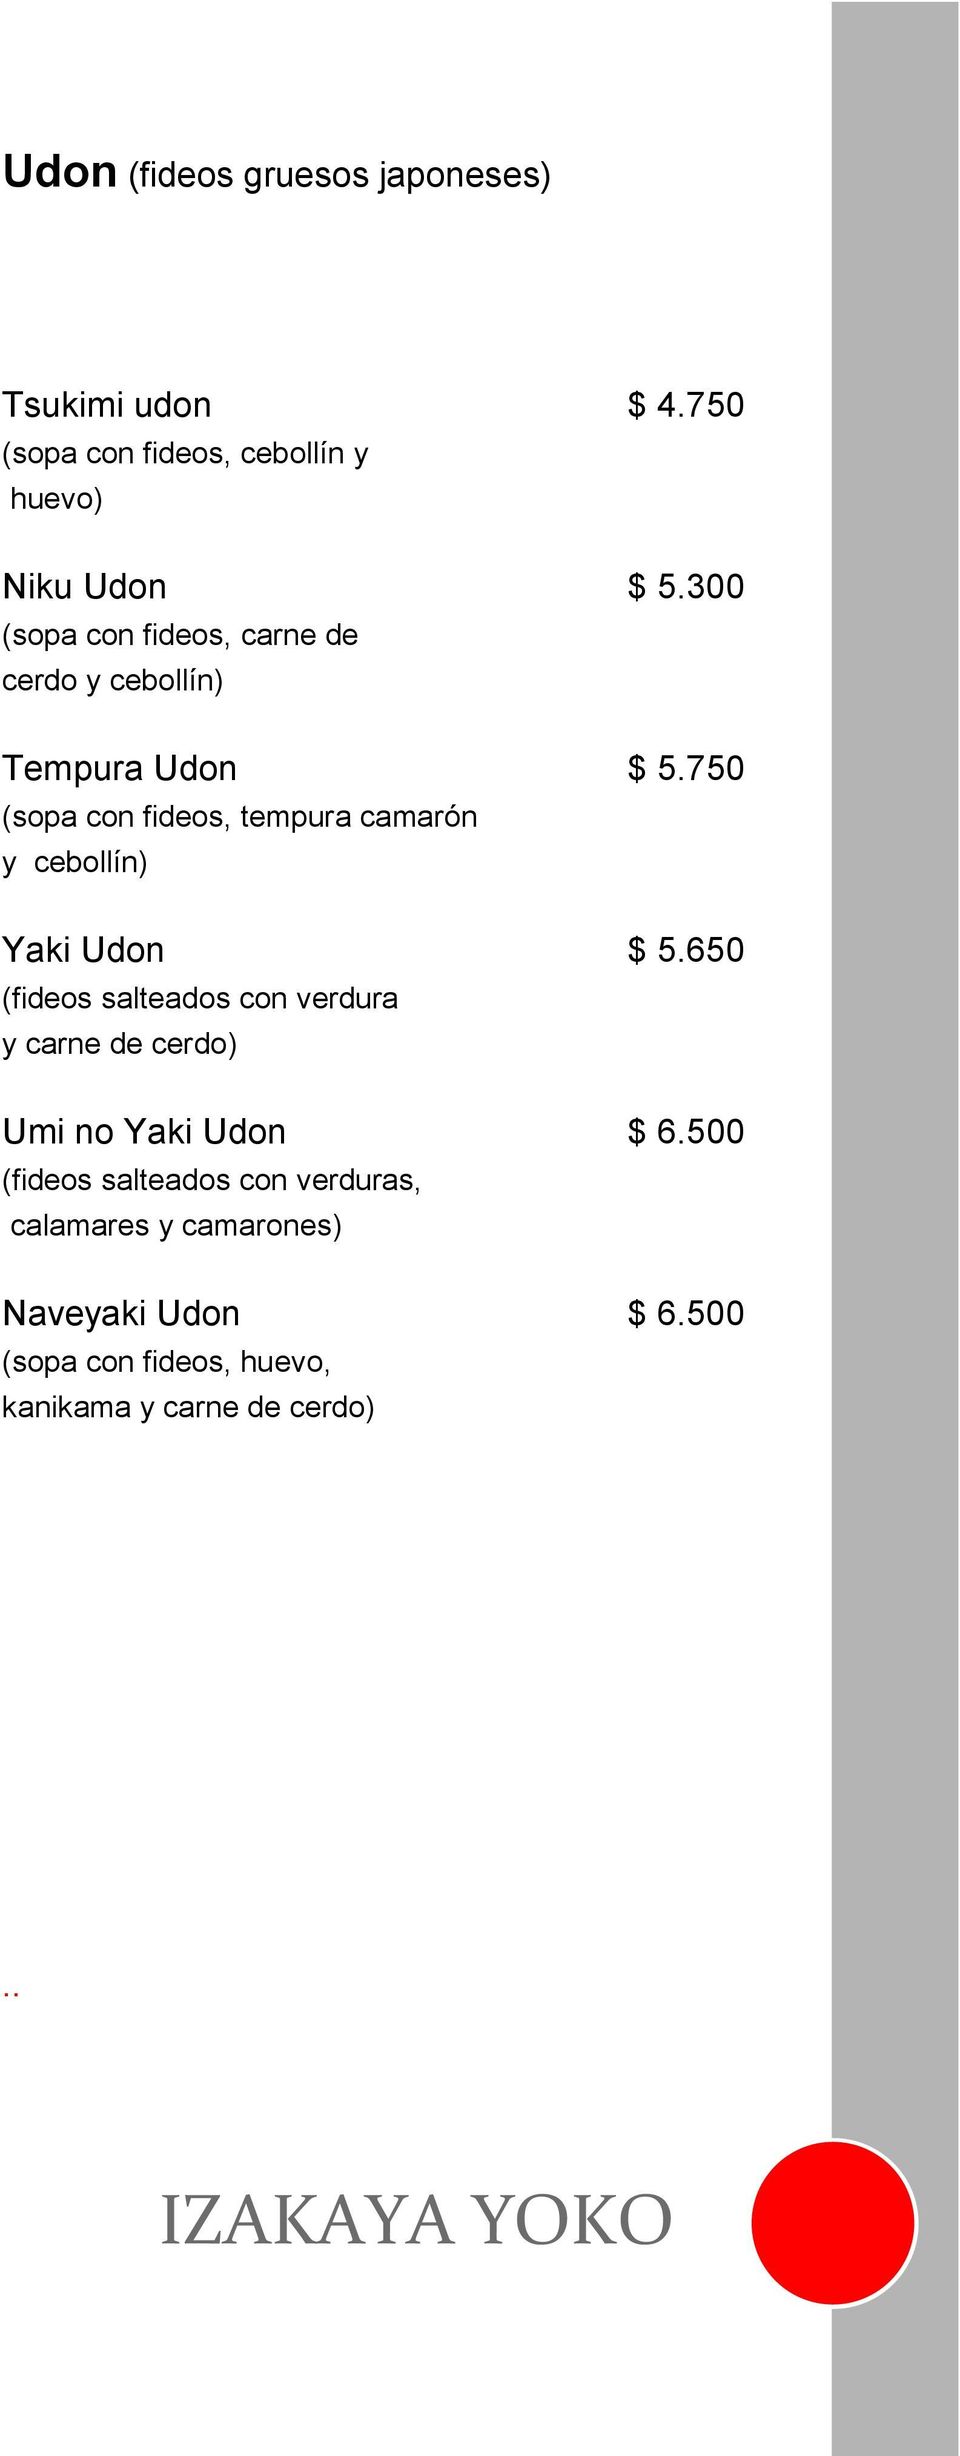 750 (sopa con fideos, tempura camarón y cebollín) Yaki Udon $ 5.